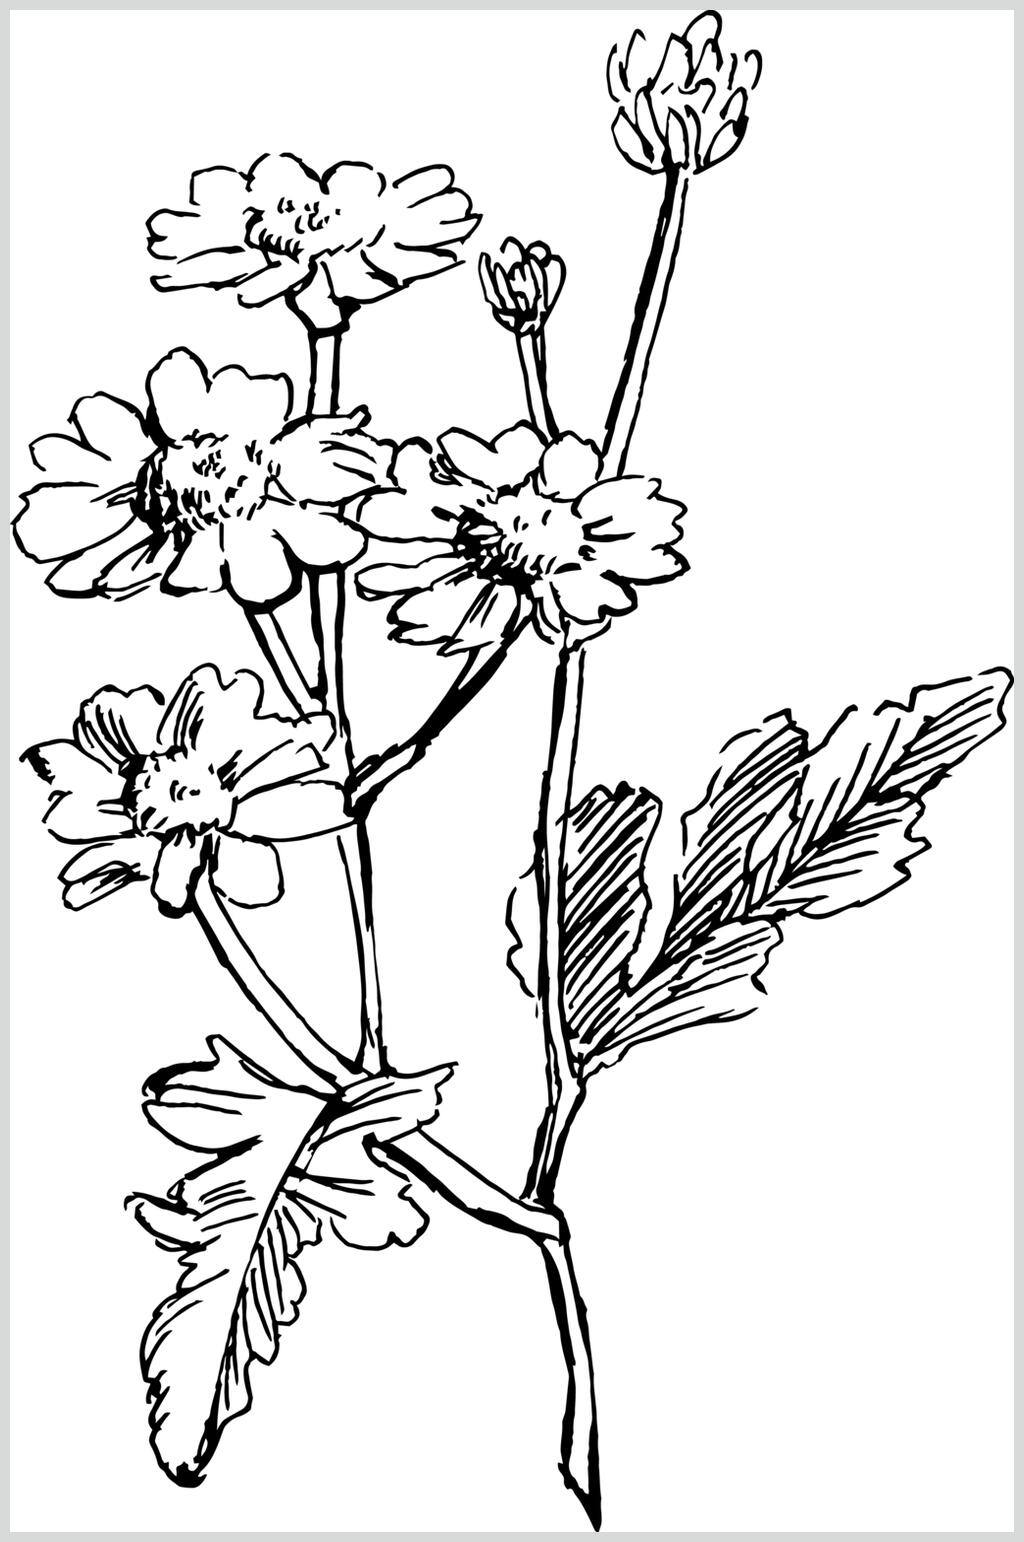 简约黄春菊植物手绘线稿矢量素材素材